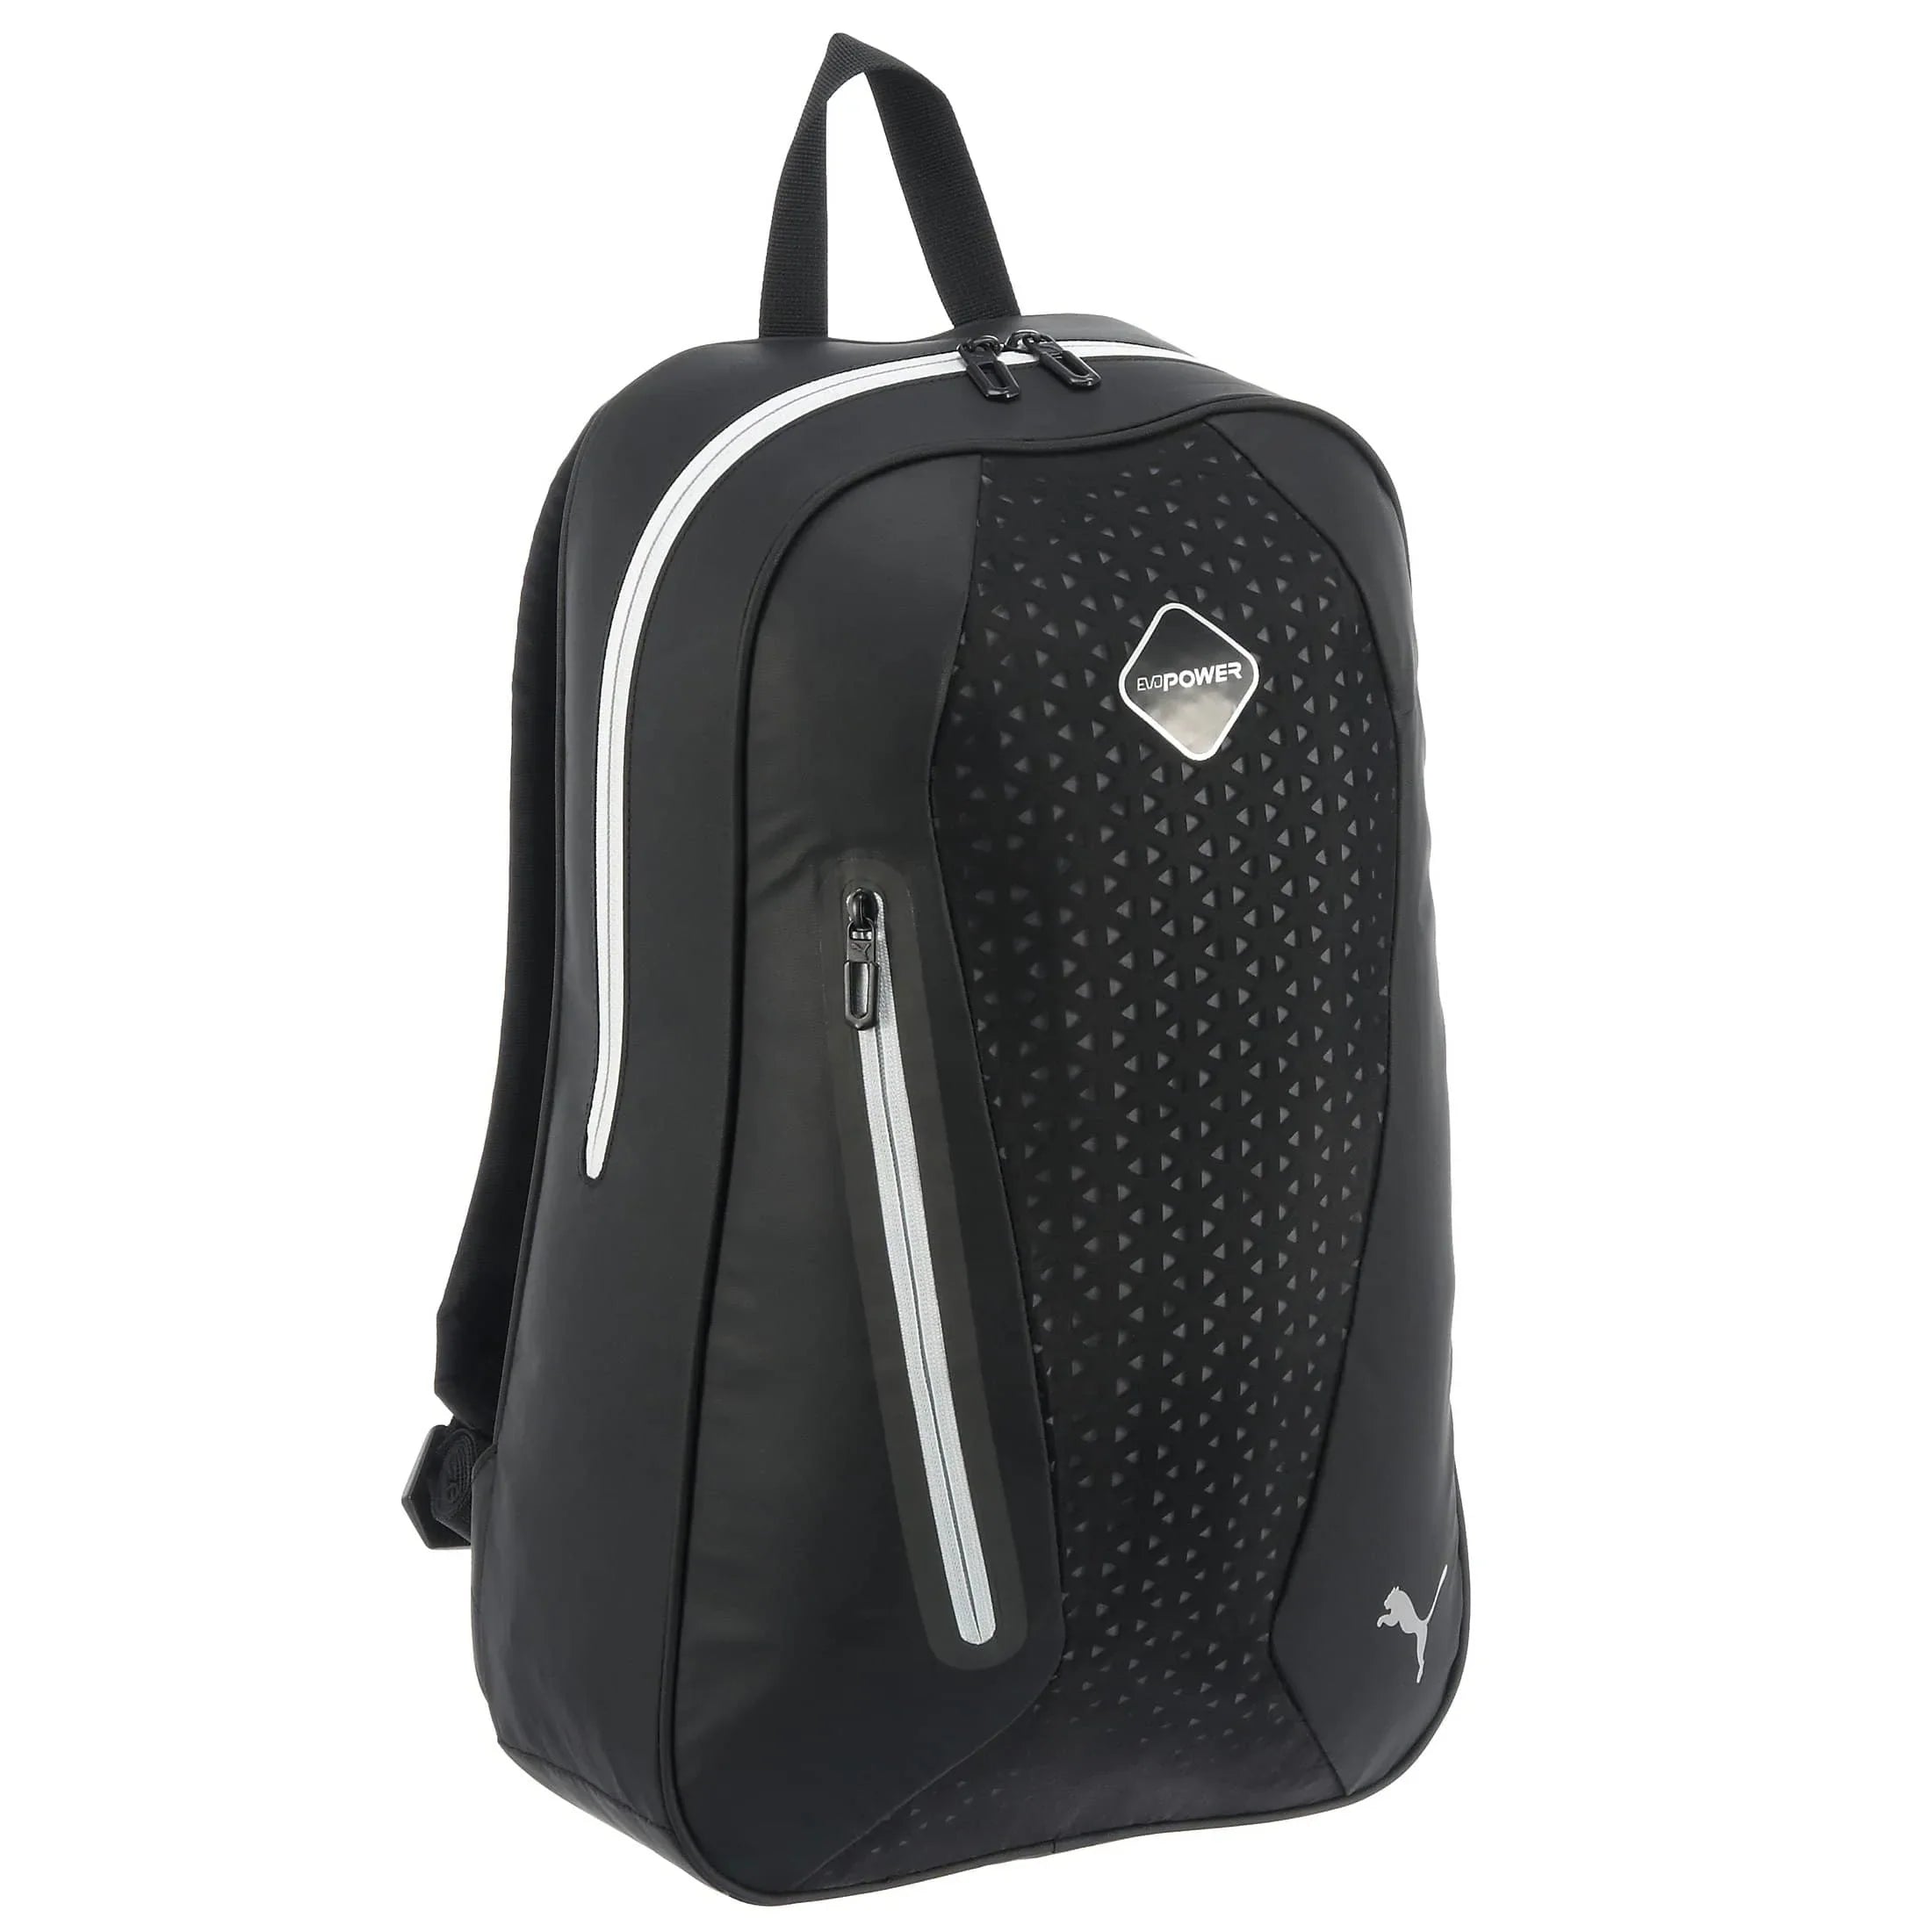 Puma evoPOWER Premium Backpack Sac à dos 50 cm - noir